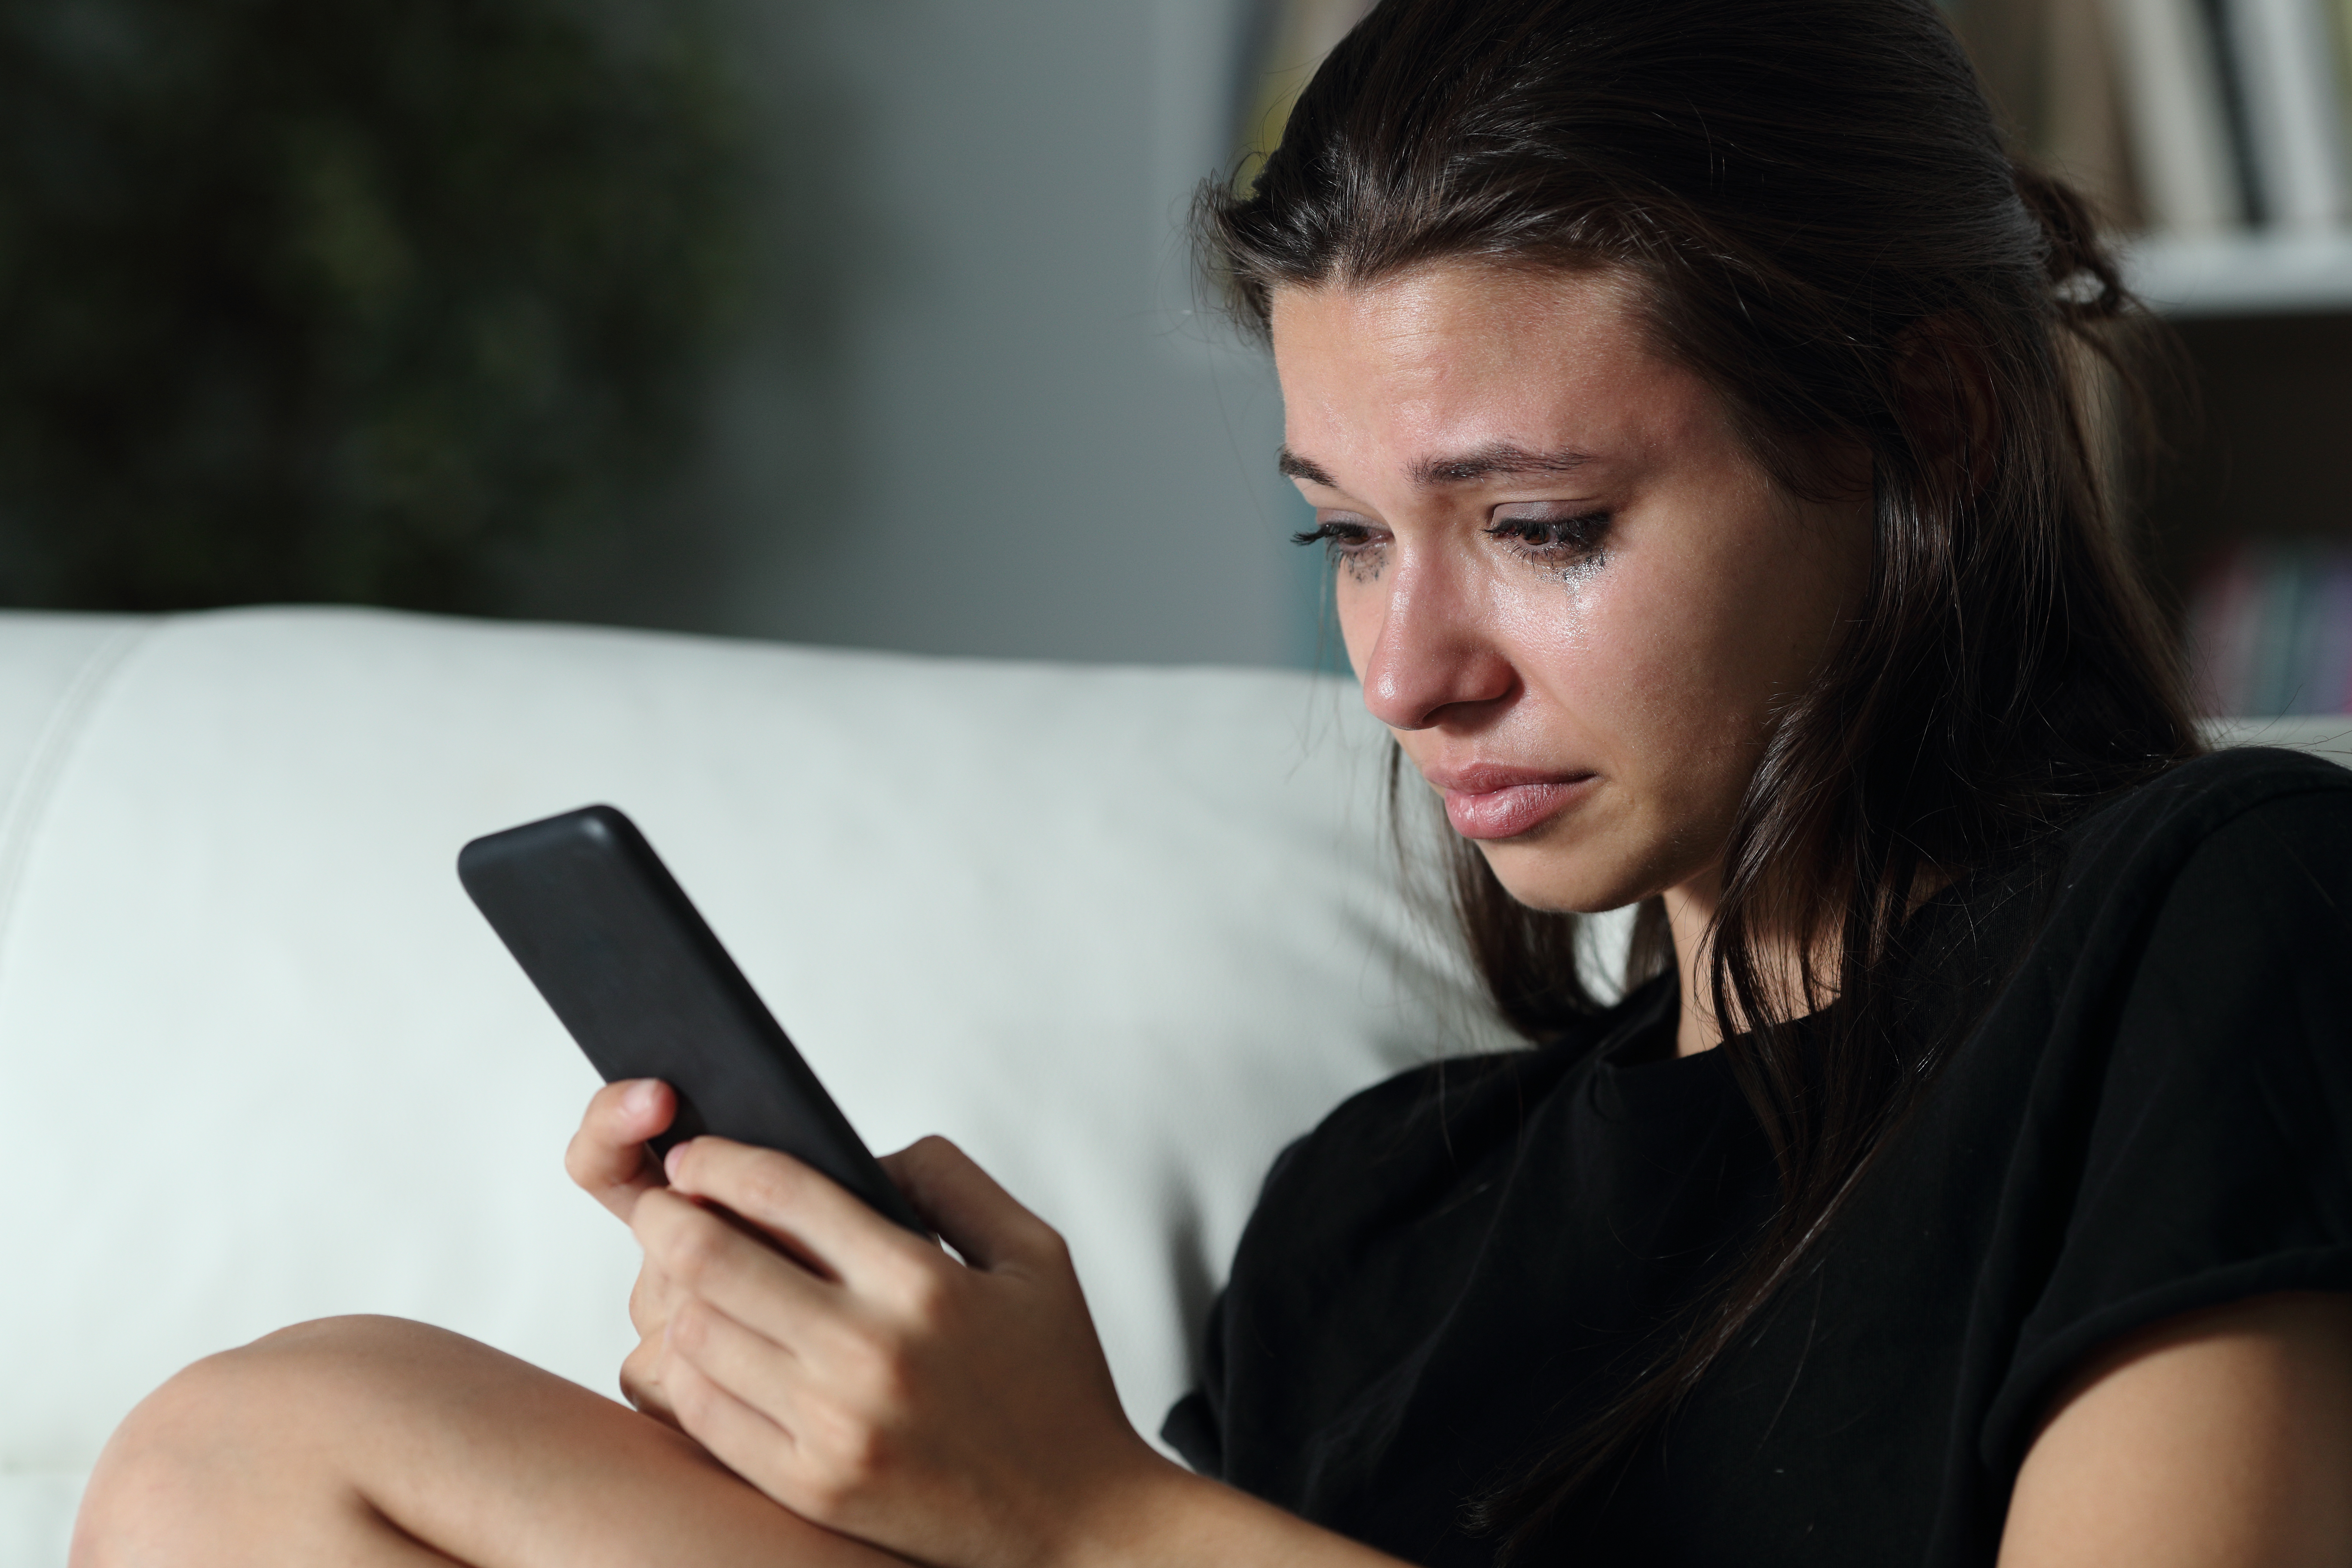 Eine weinende junge Frau, die ihr Telefon in der Hand hält | Quelle: Shutterstock